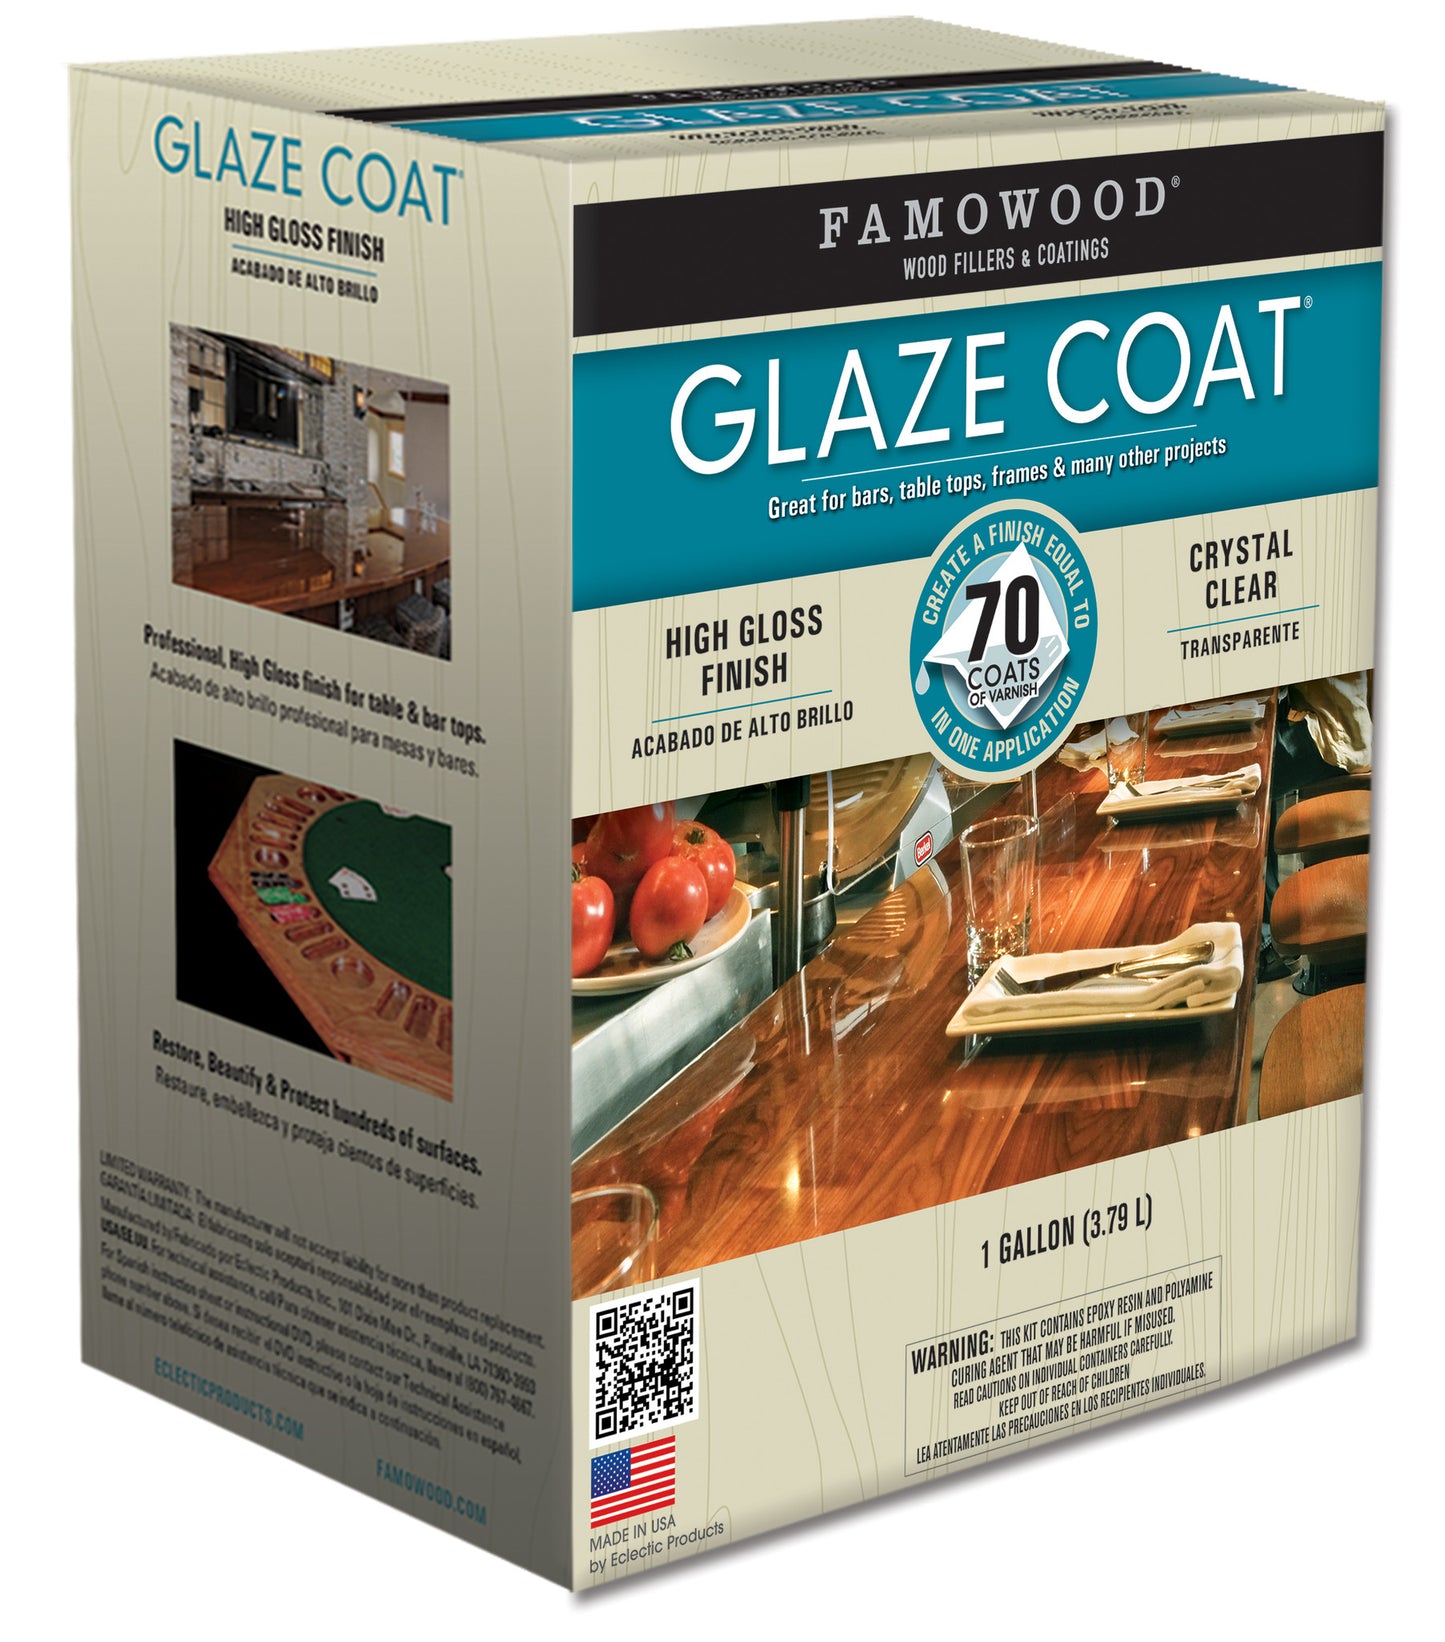 Famowood Glaze Coat Epoxy Coating One Gallon Kit 5050110 - Creative Wholesale